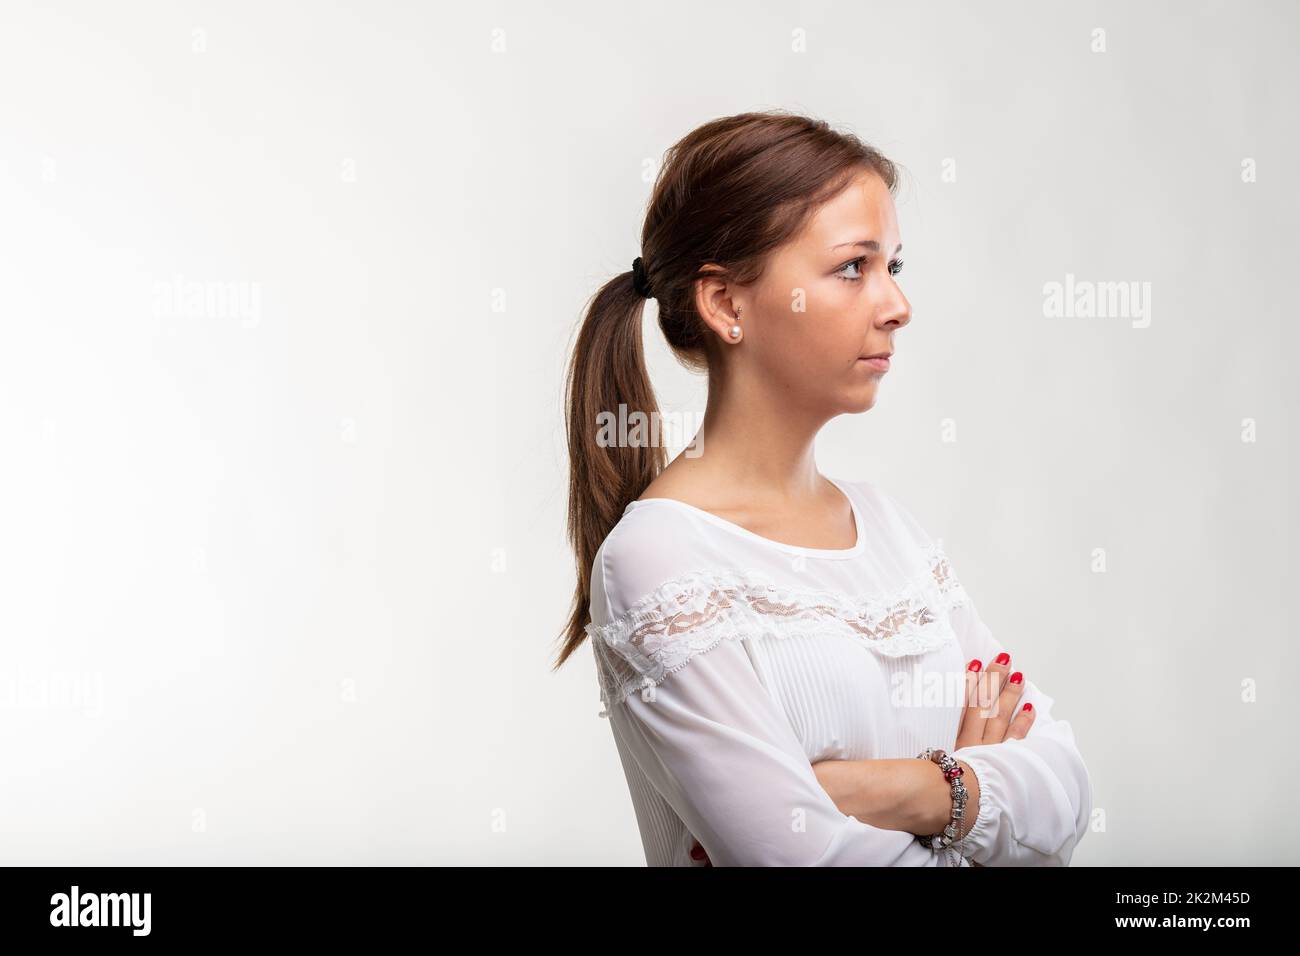 Selbstbewusste, ruhige junge Frau, die mit gefalteten Armen steht Stockfoto